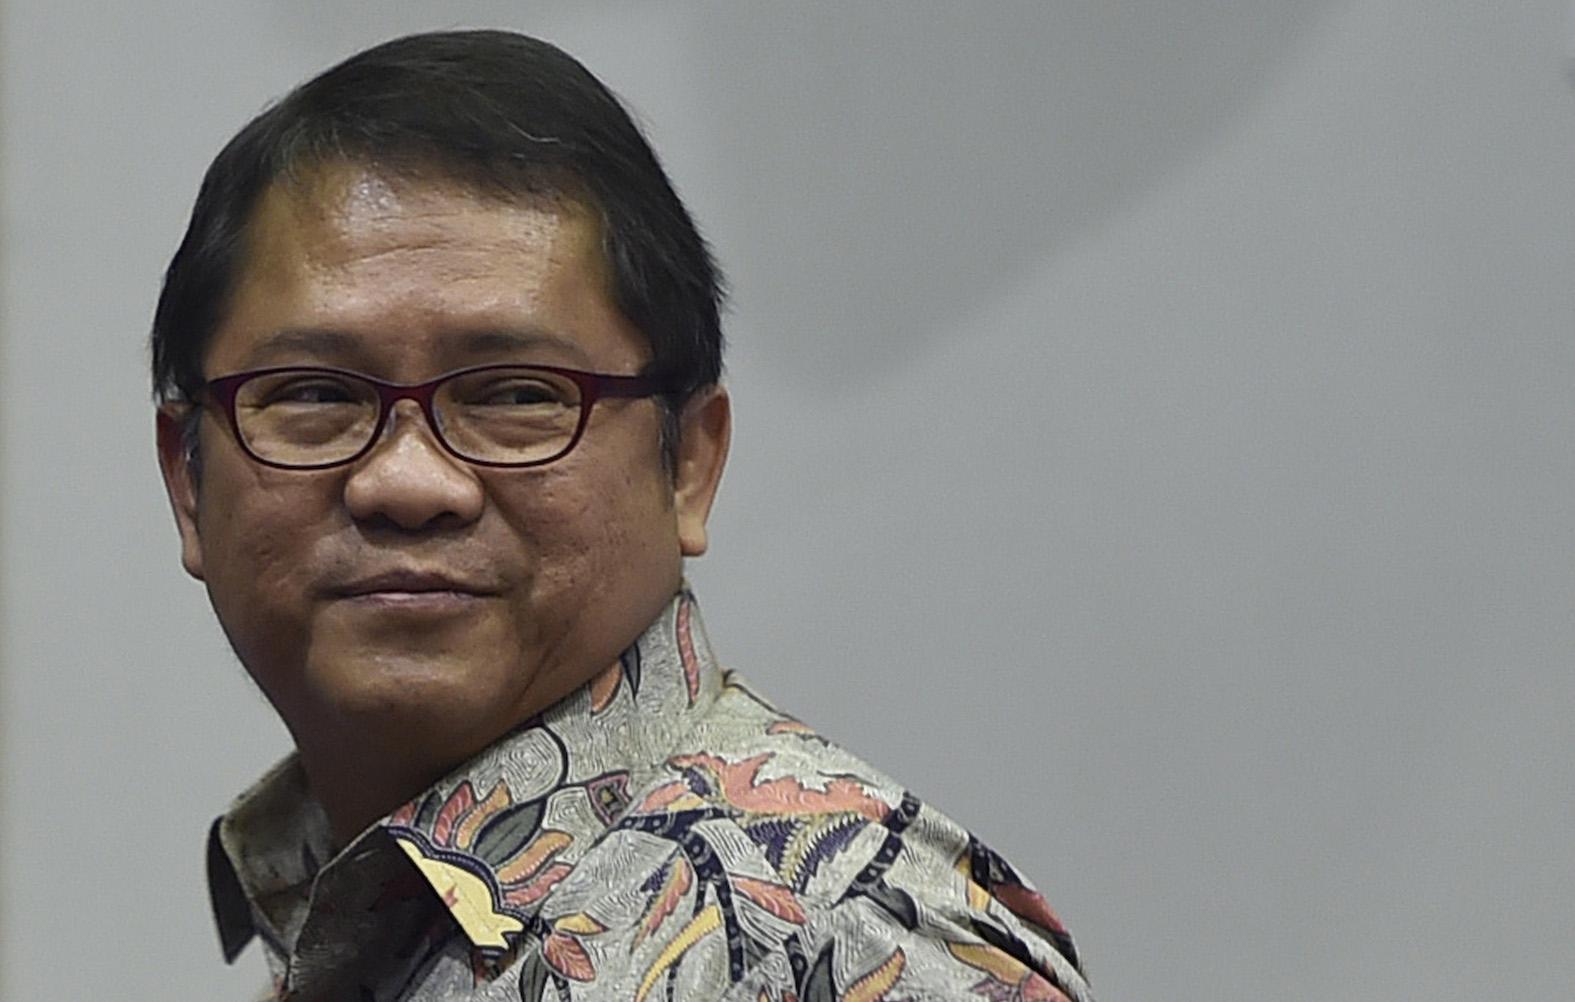 Menkominfo Rudiantara: "E-Commerce Indonesia pada 2020 Bisa Capai US$130 Miliar"